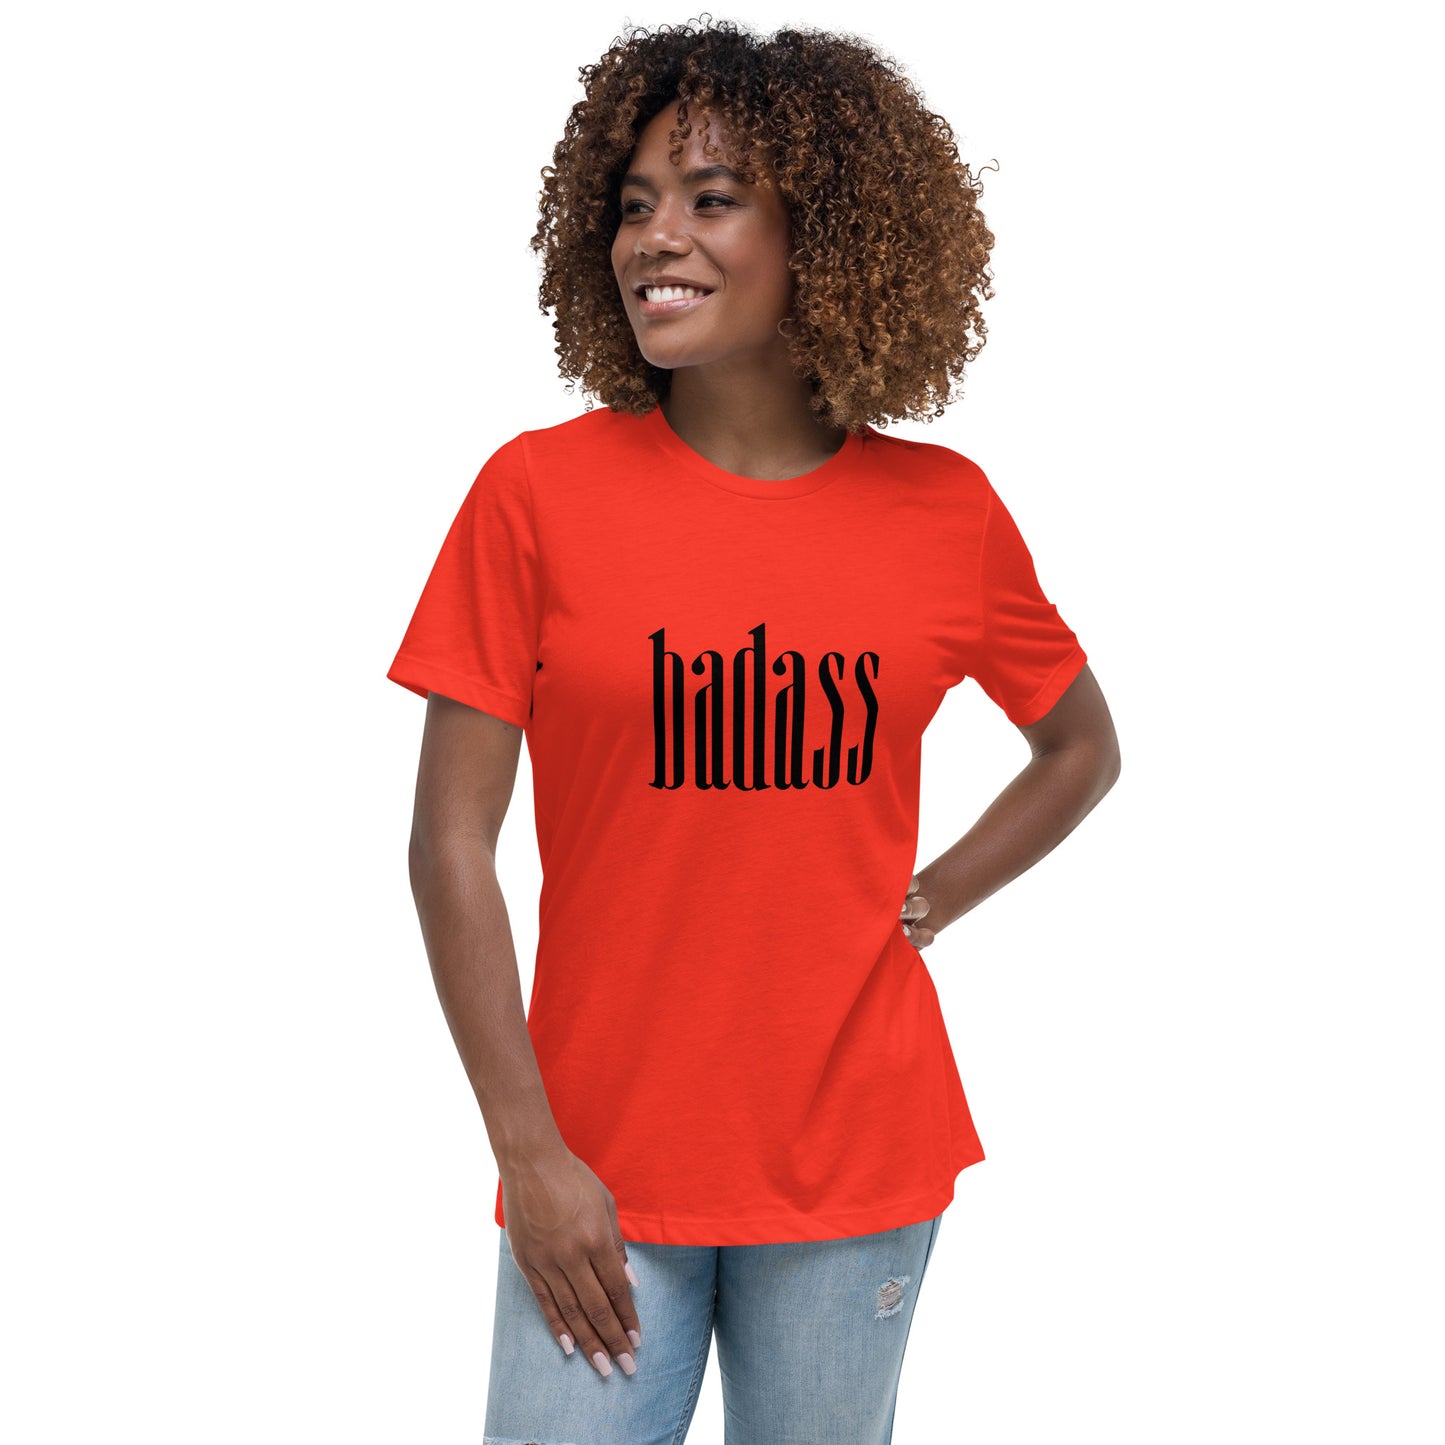 BadA$$ Women's Relaxed T-Shirt